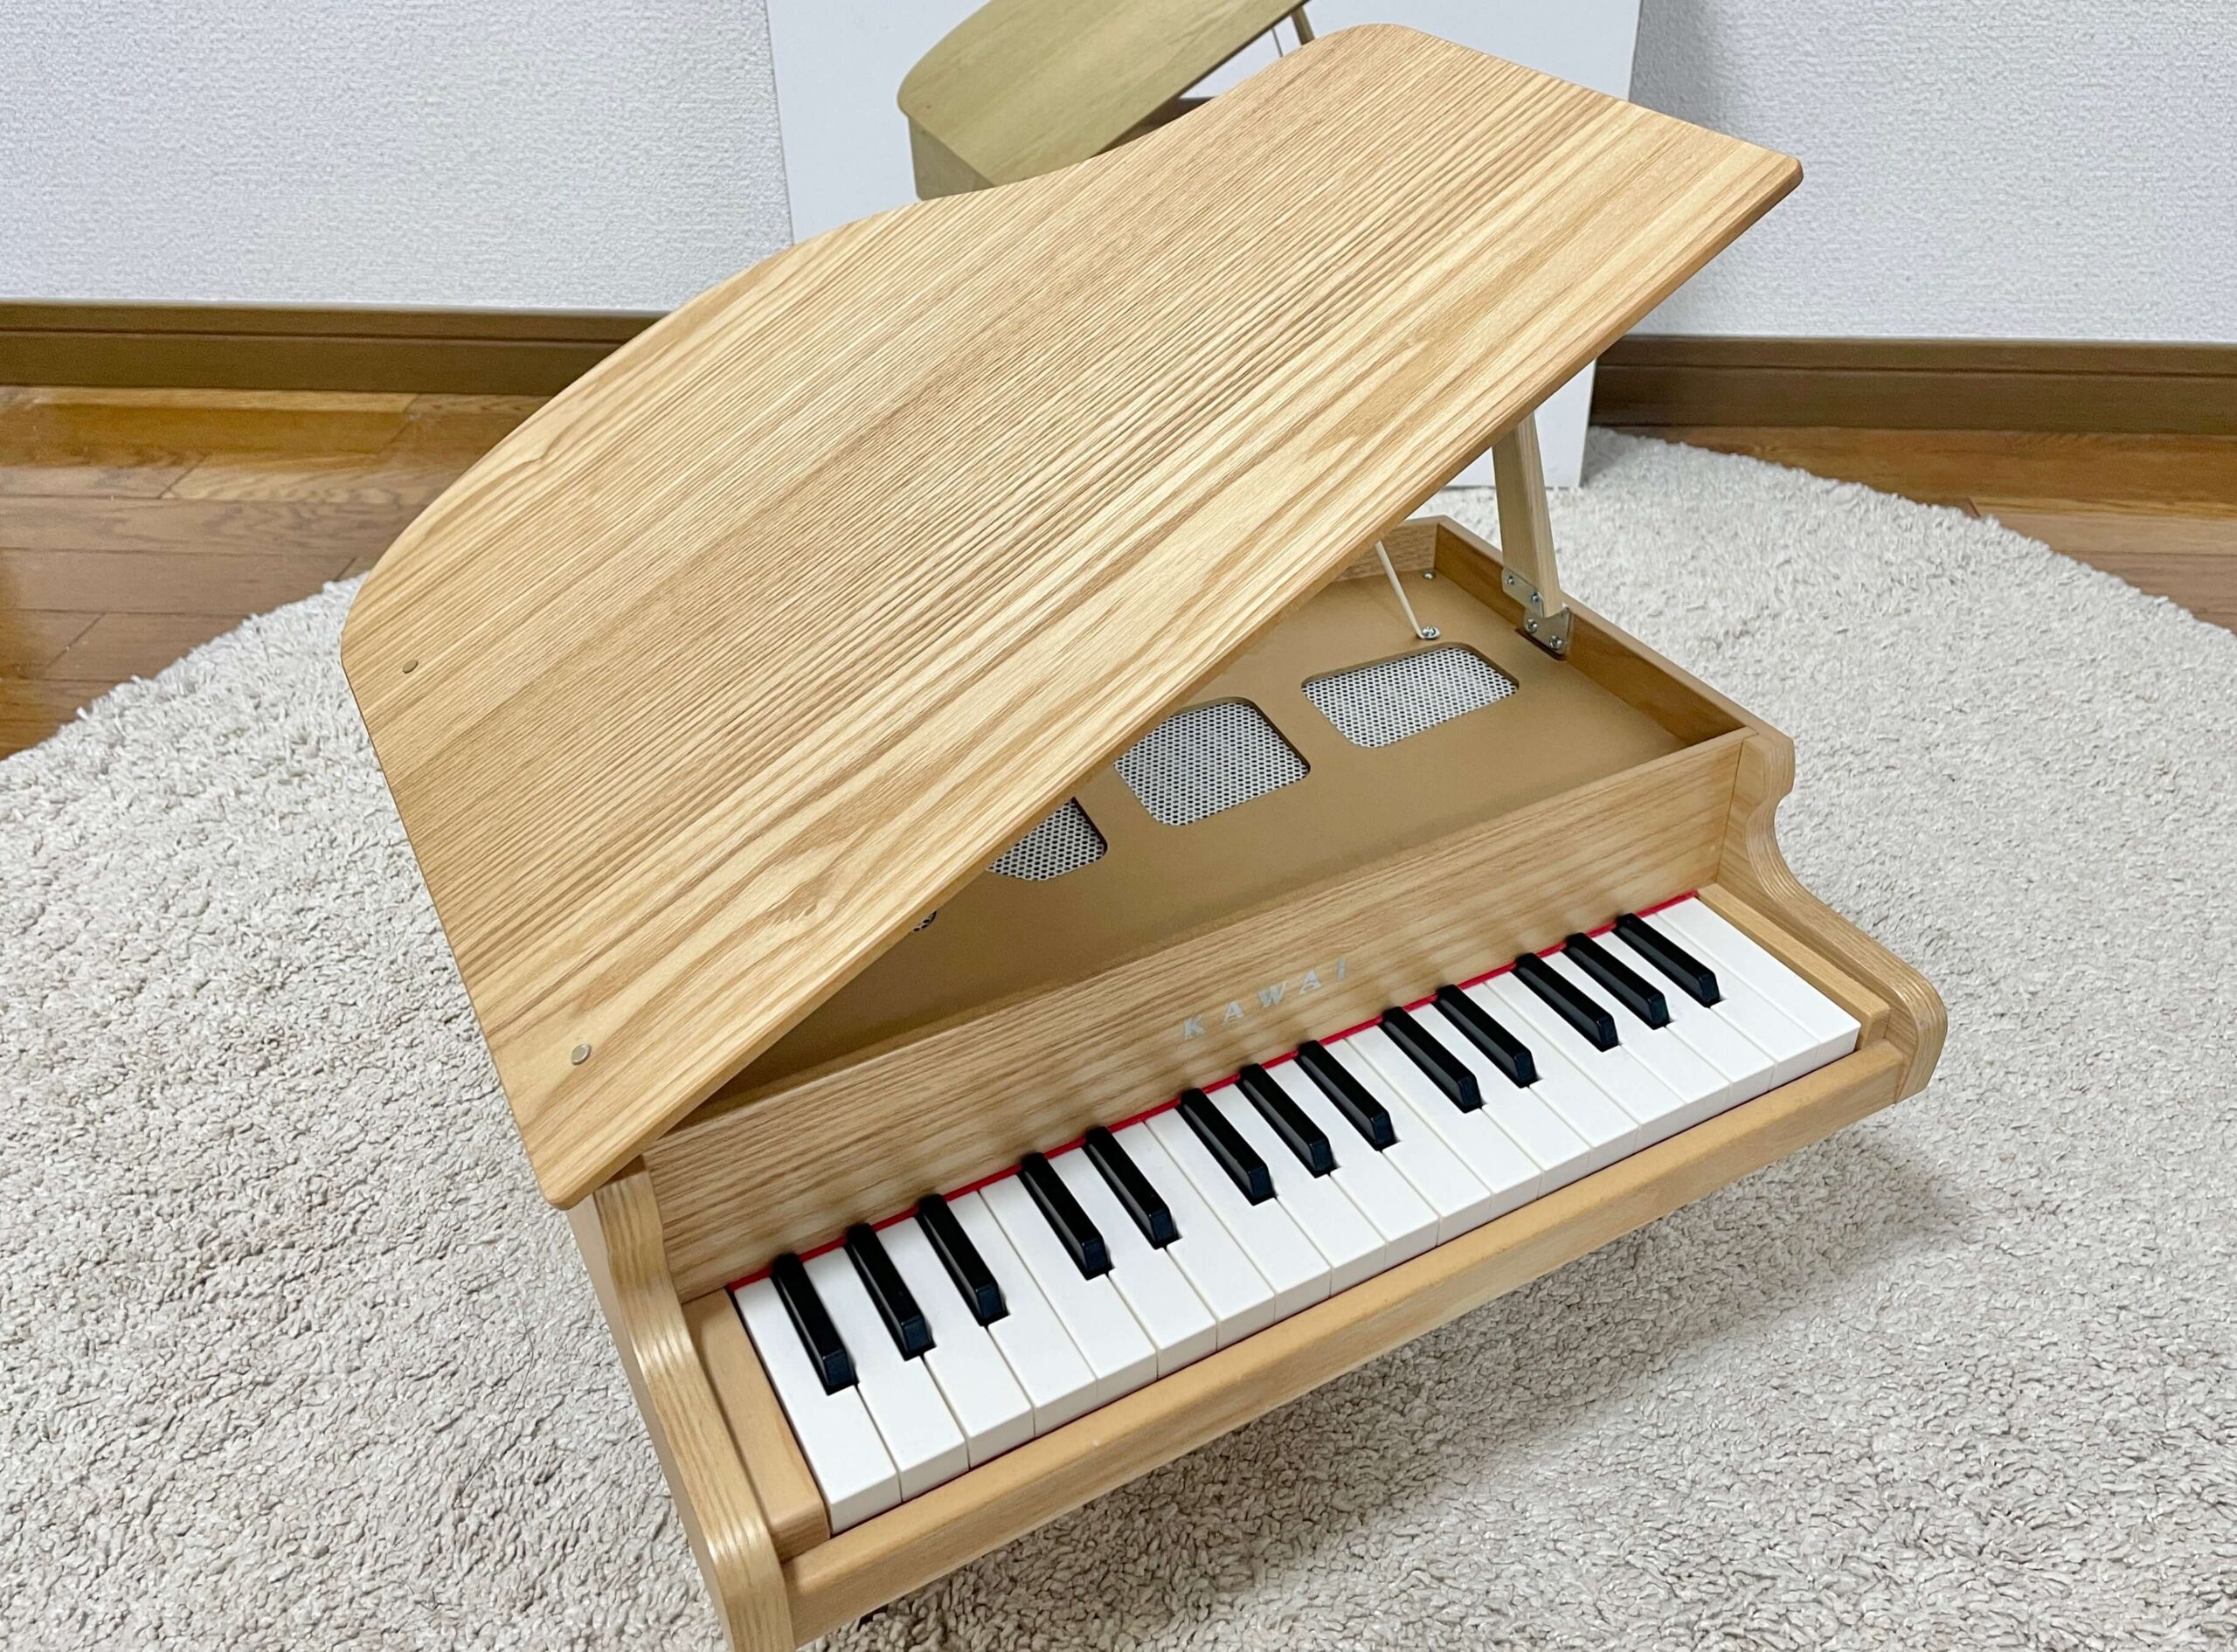 私が購入したカワイミニピアノグランドピアノナチュラル